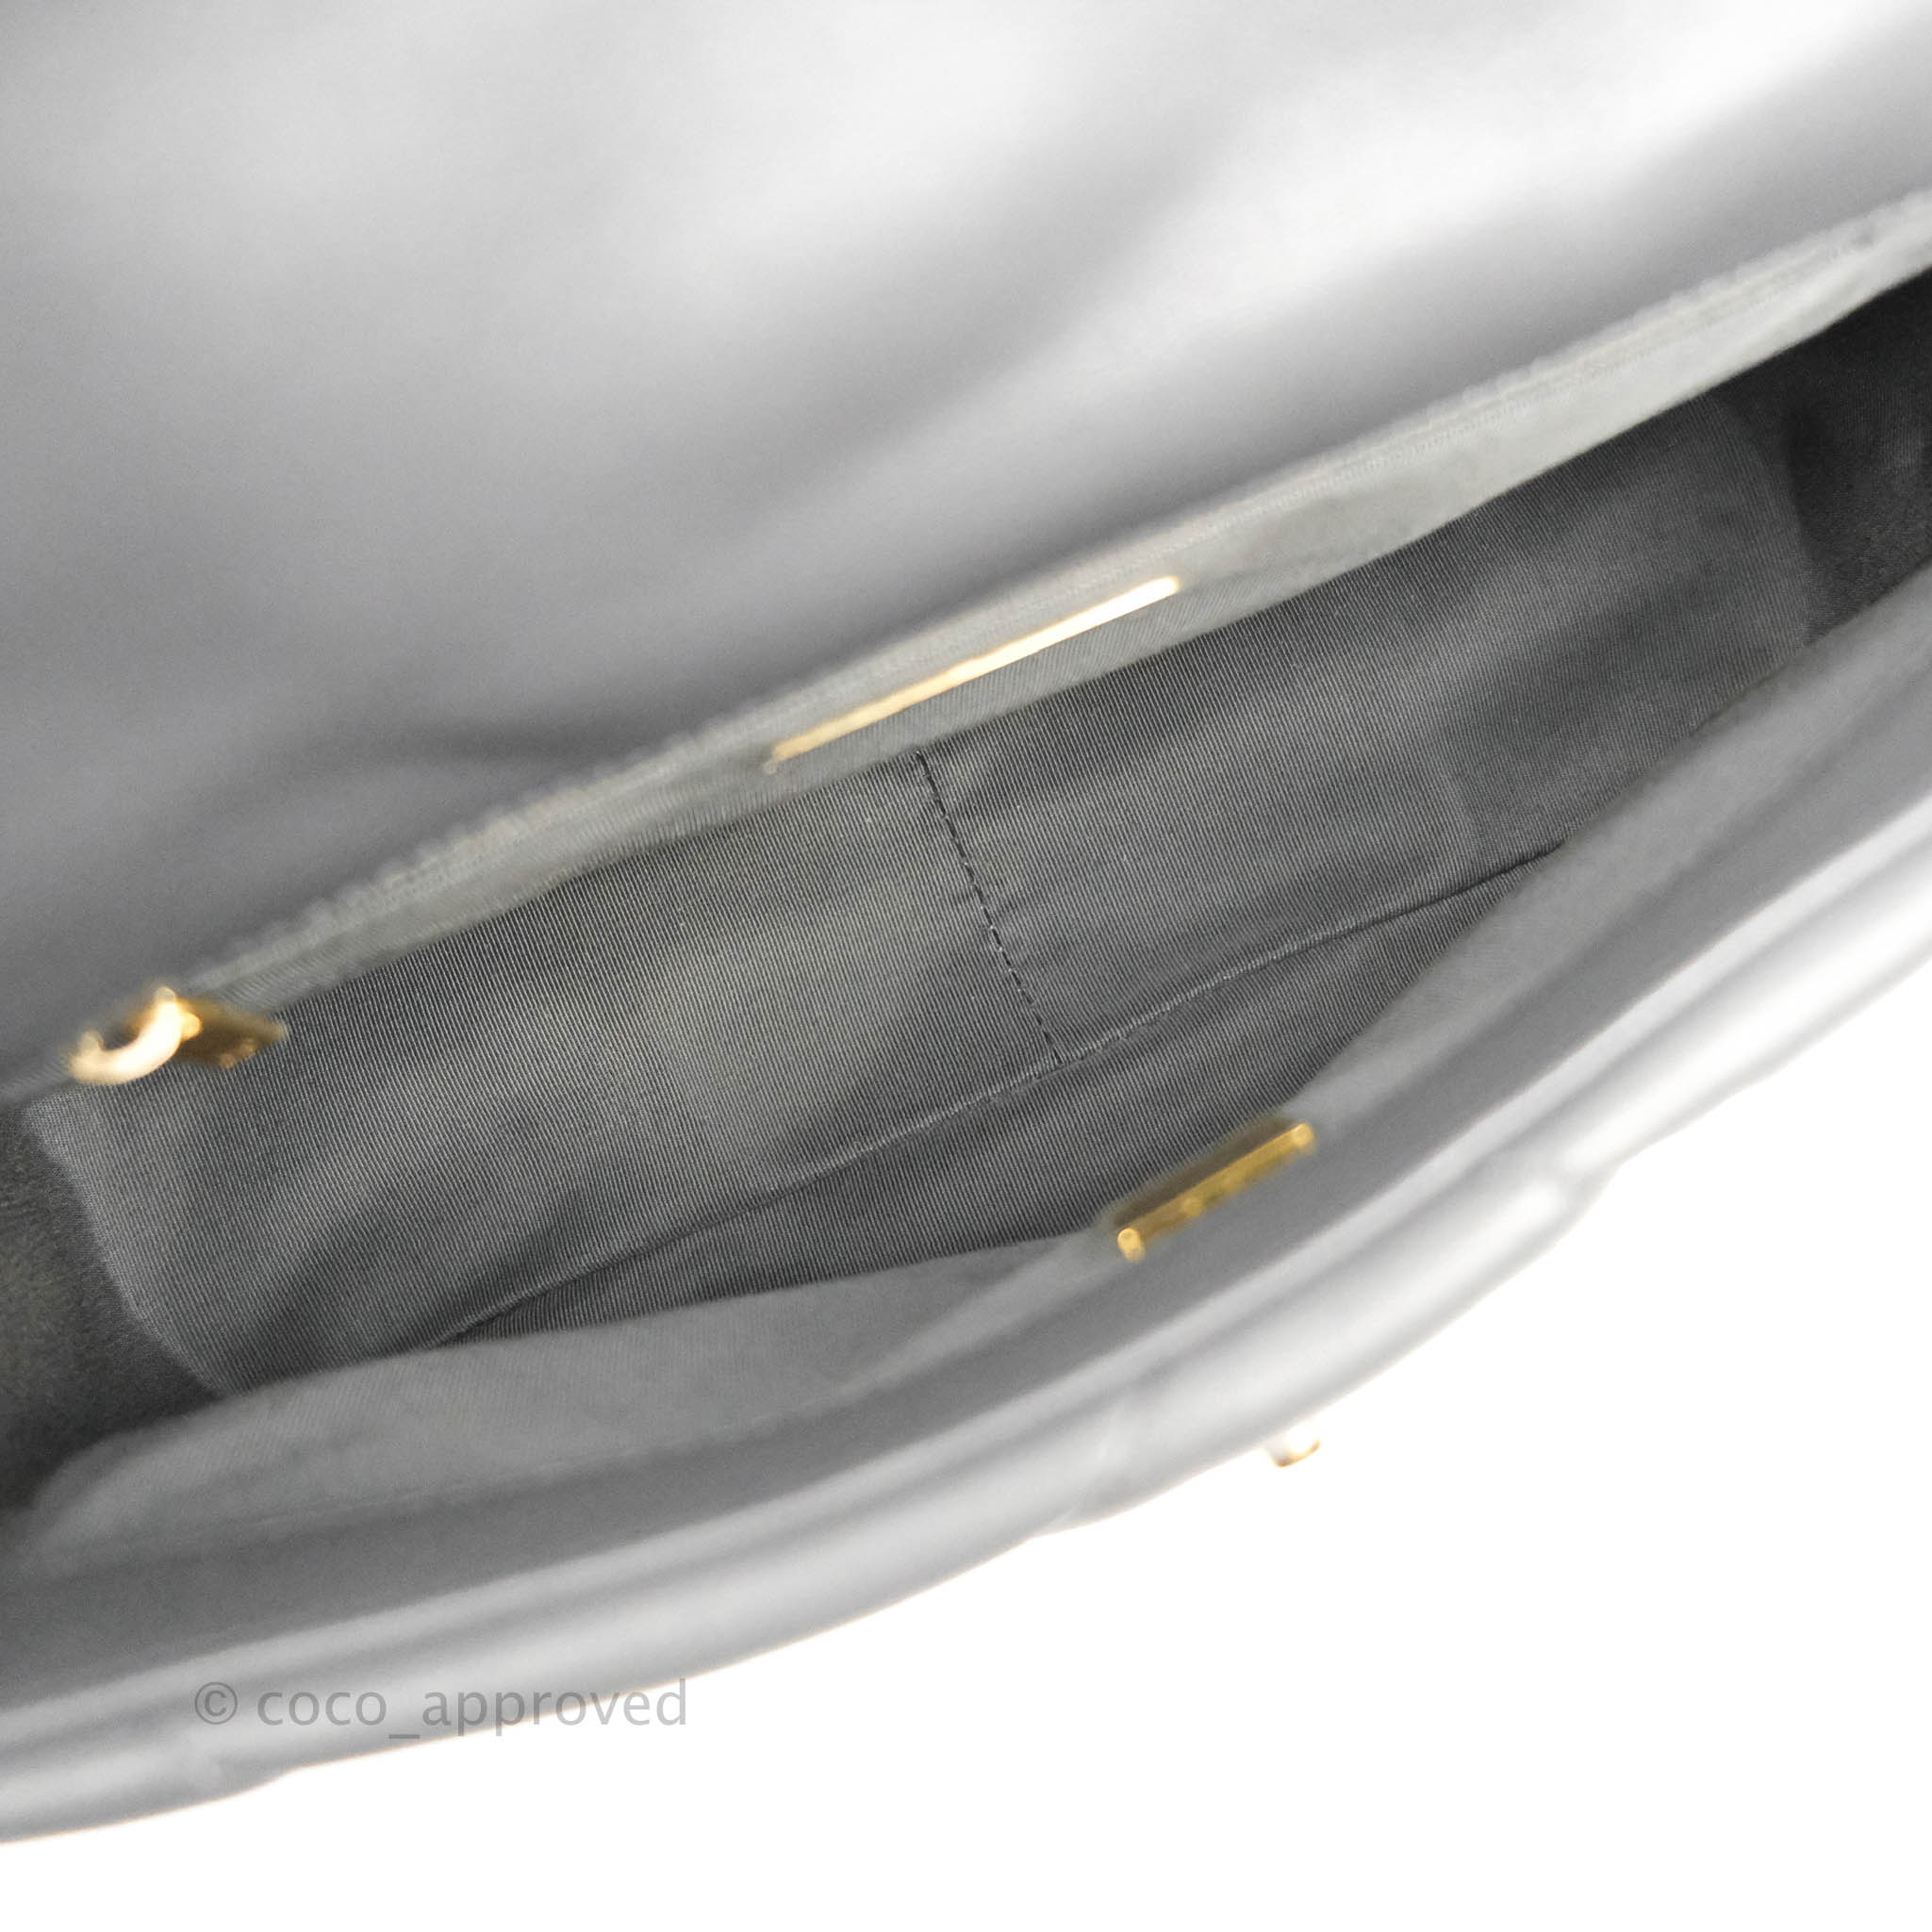 Chanel Medium 19 Flap Bag Beige Calfskin Mixed Hardware